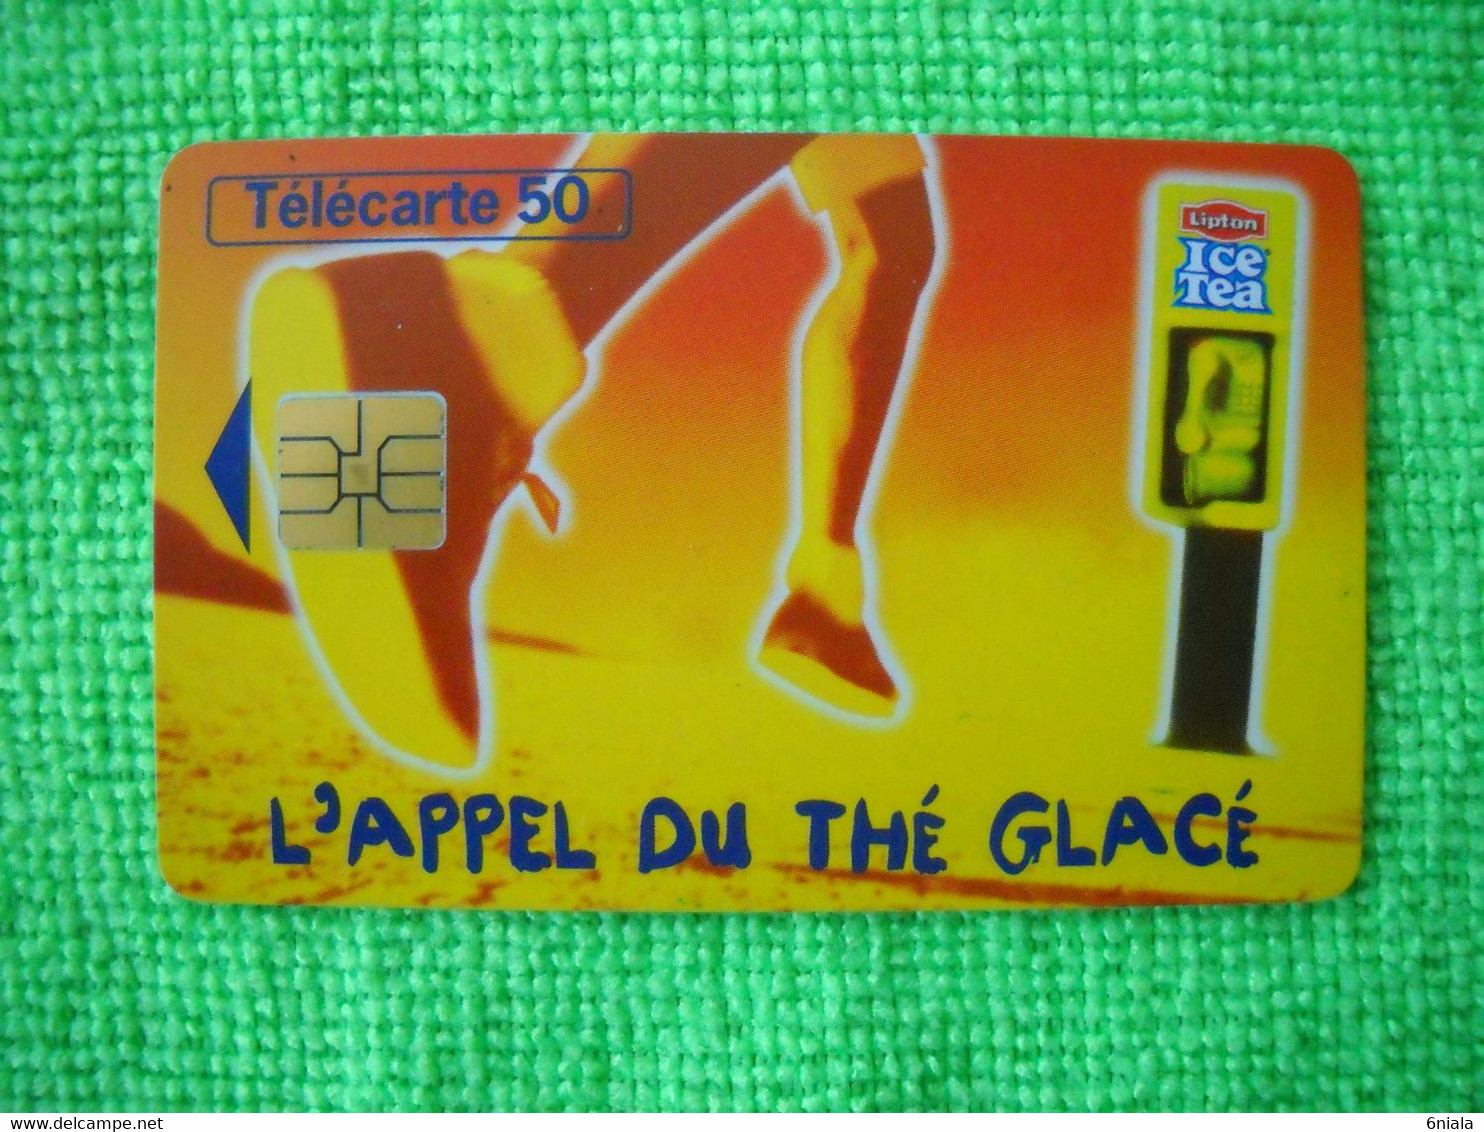 7083 Télécarte Collection ICE TEA L'appel Du Thé Glacé   (Boisson) 50u  ( Recto Verso)  Carte Téléphonique - Alimentation